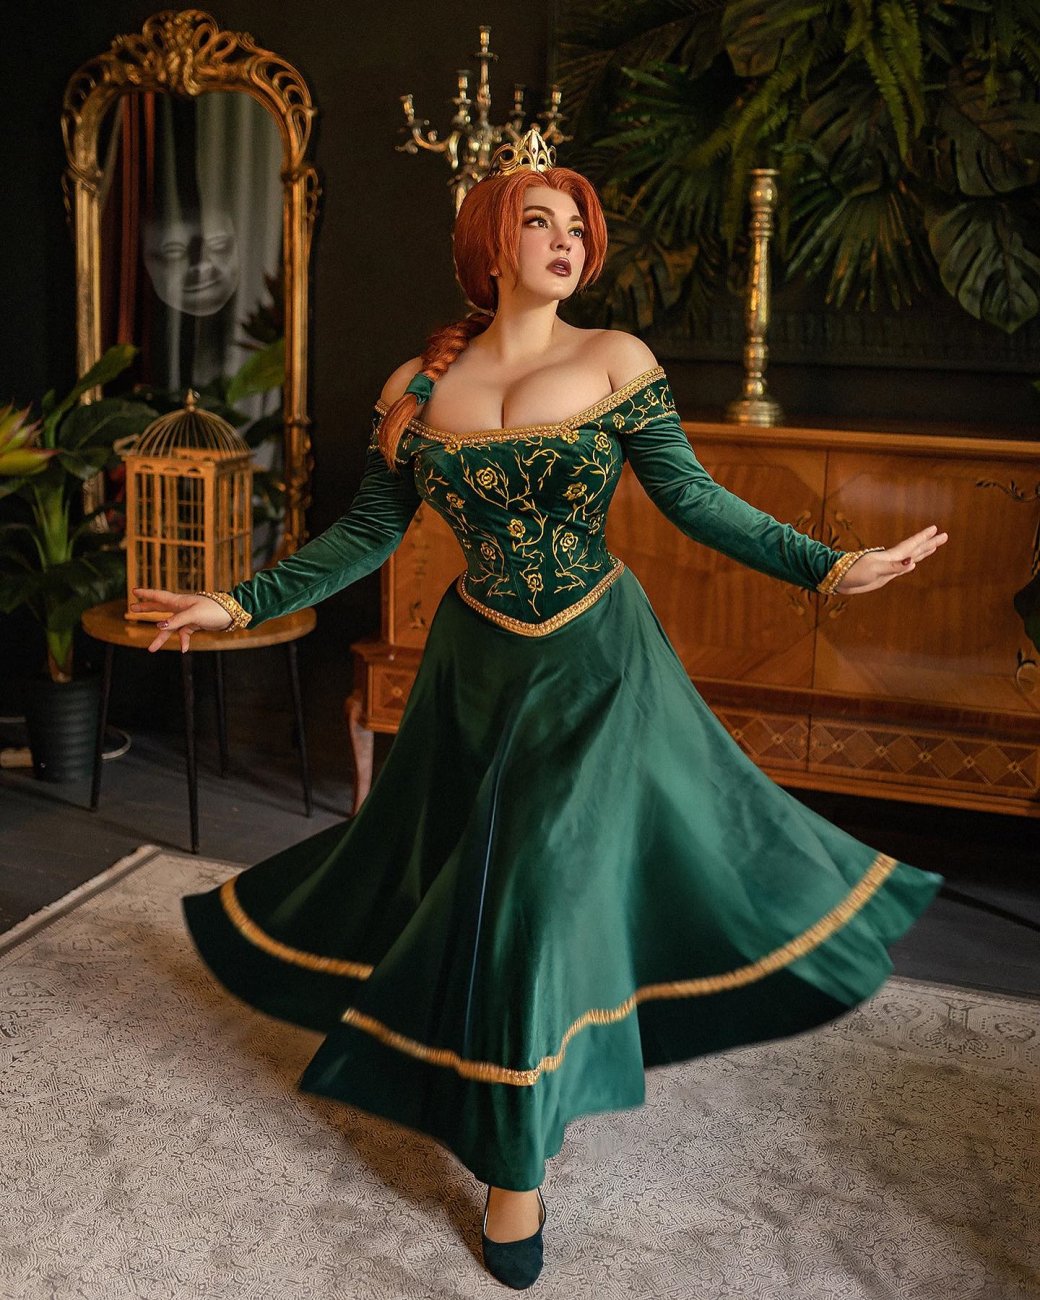 Галерея Косплеер обнажилась для роскошного образа принцессы Фионы из «Шрэка» - 6 фото